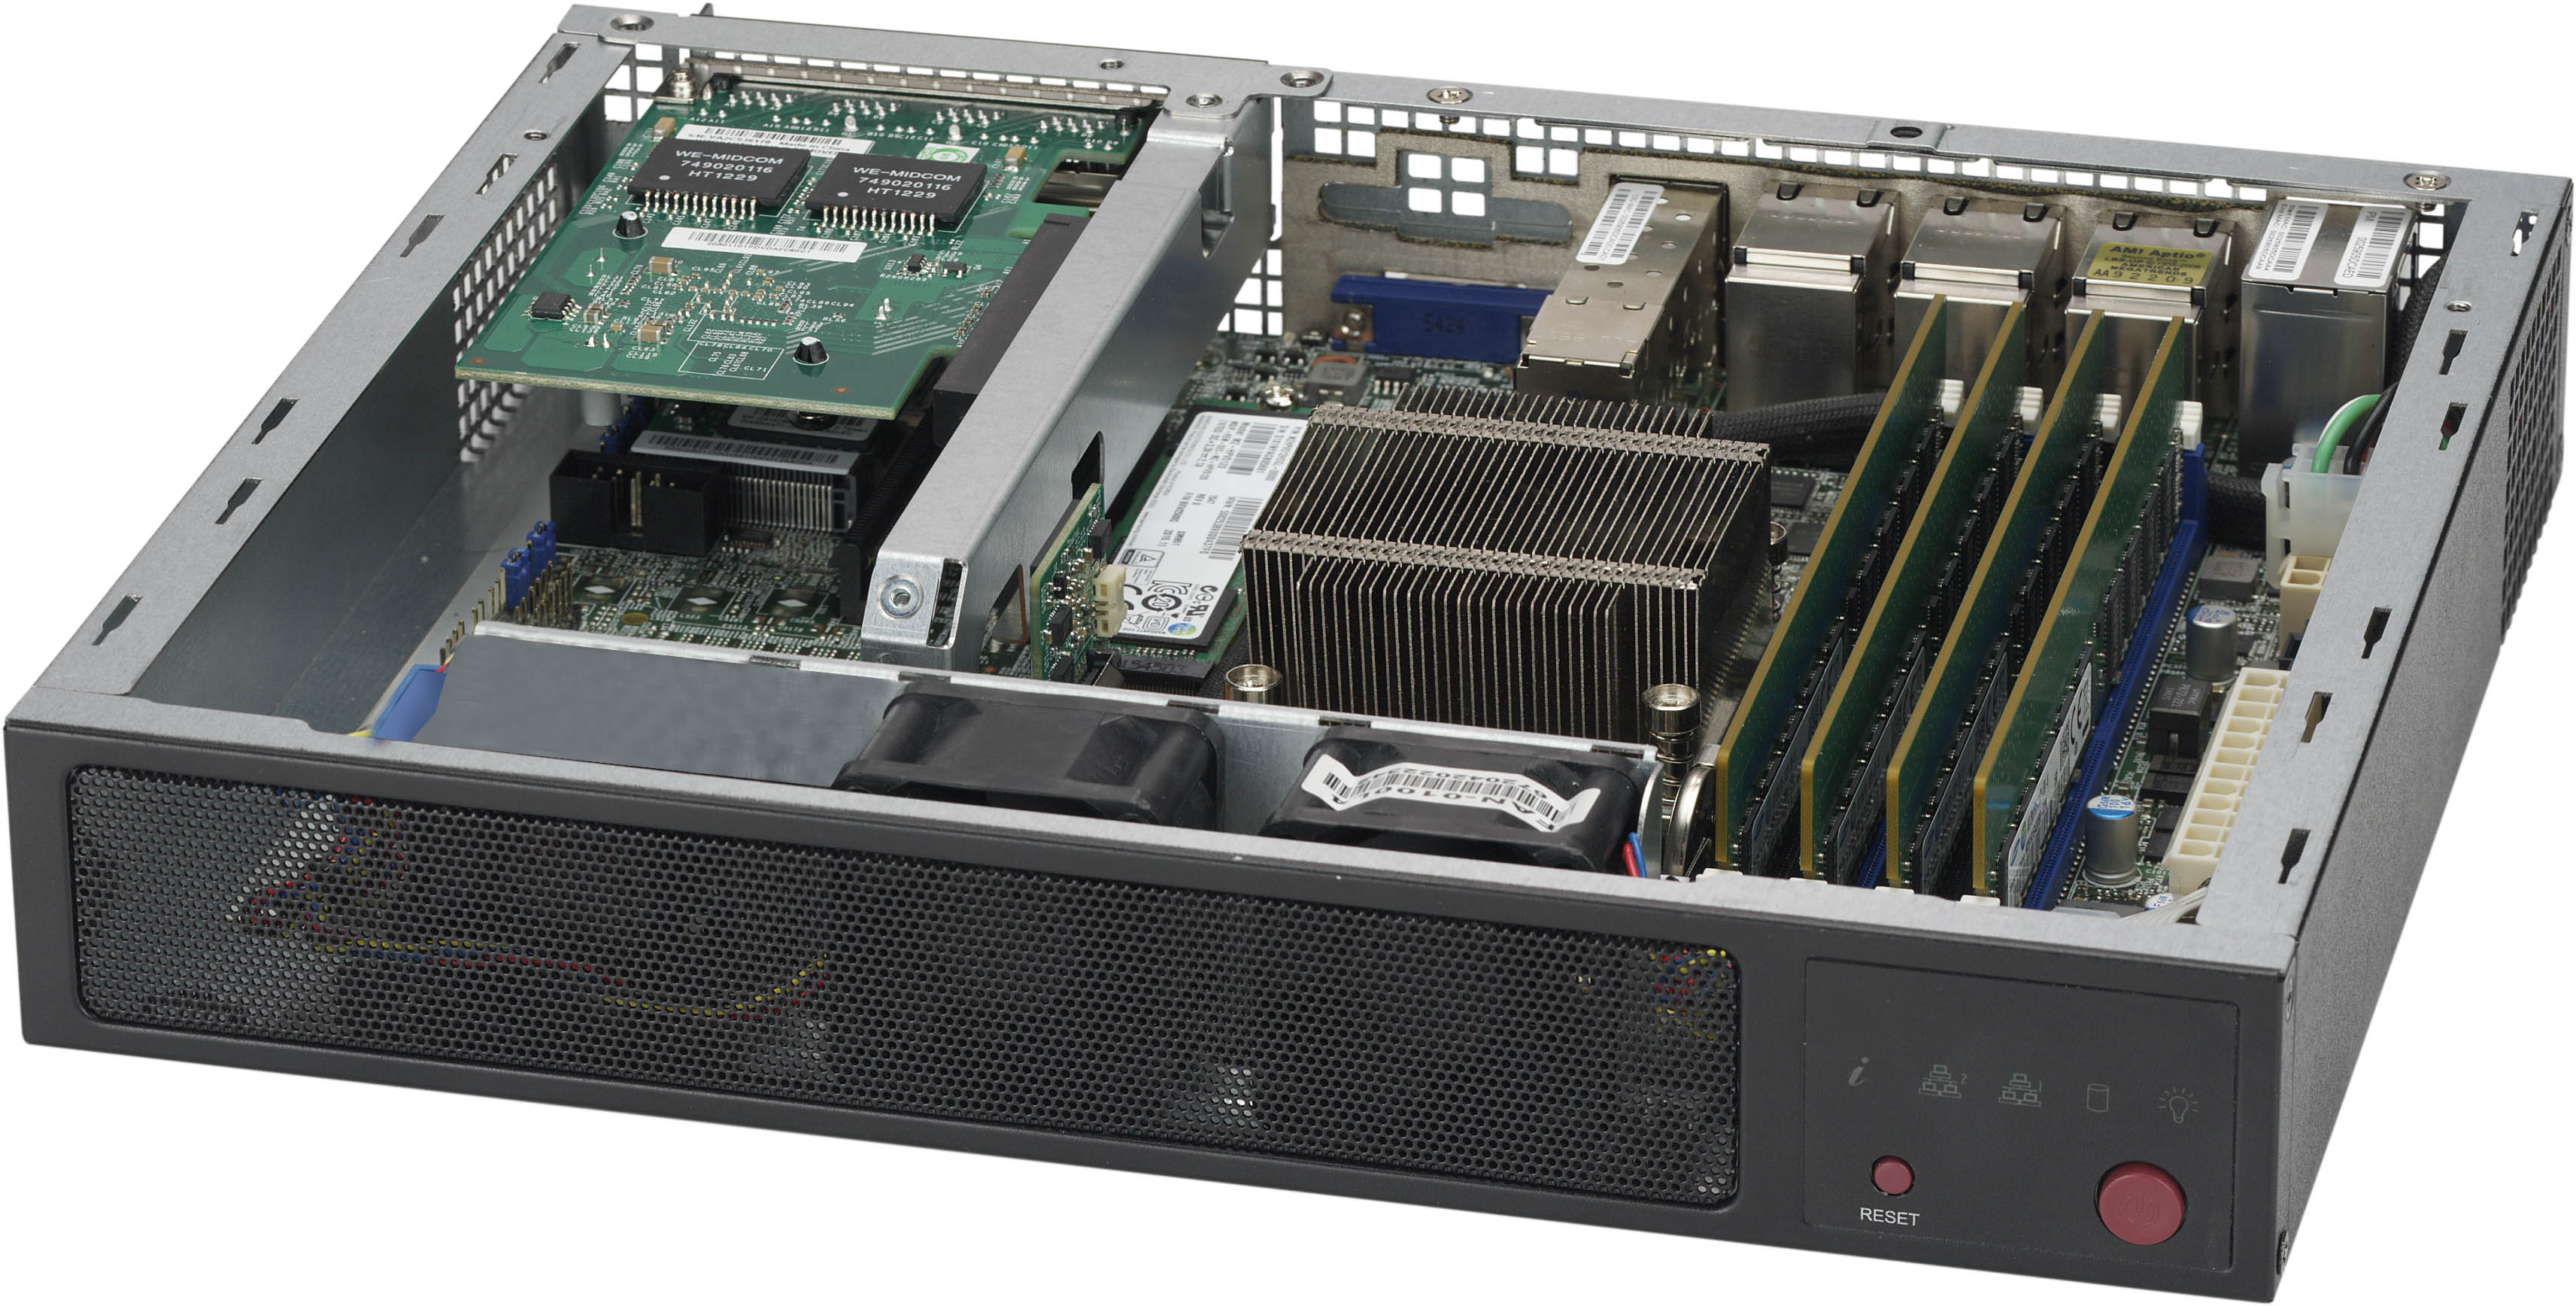 Supermicro 1U Server X9SRG-F Barebones with 1400w PSU CSE-818 